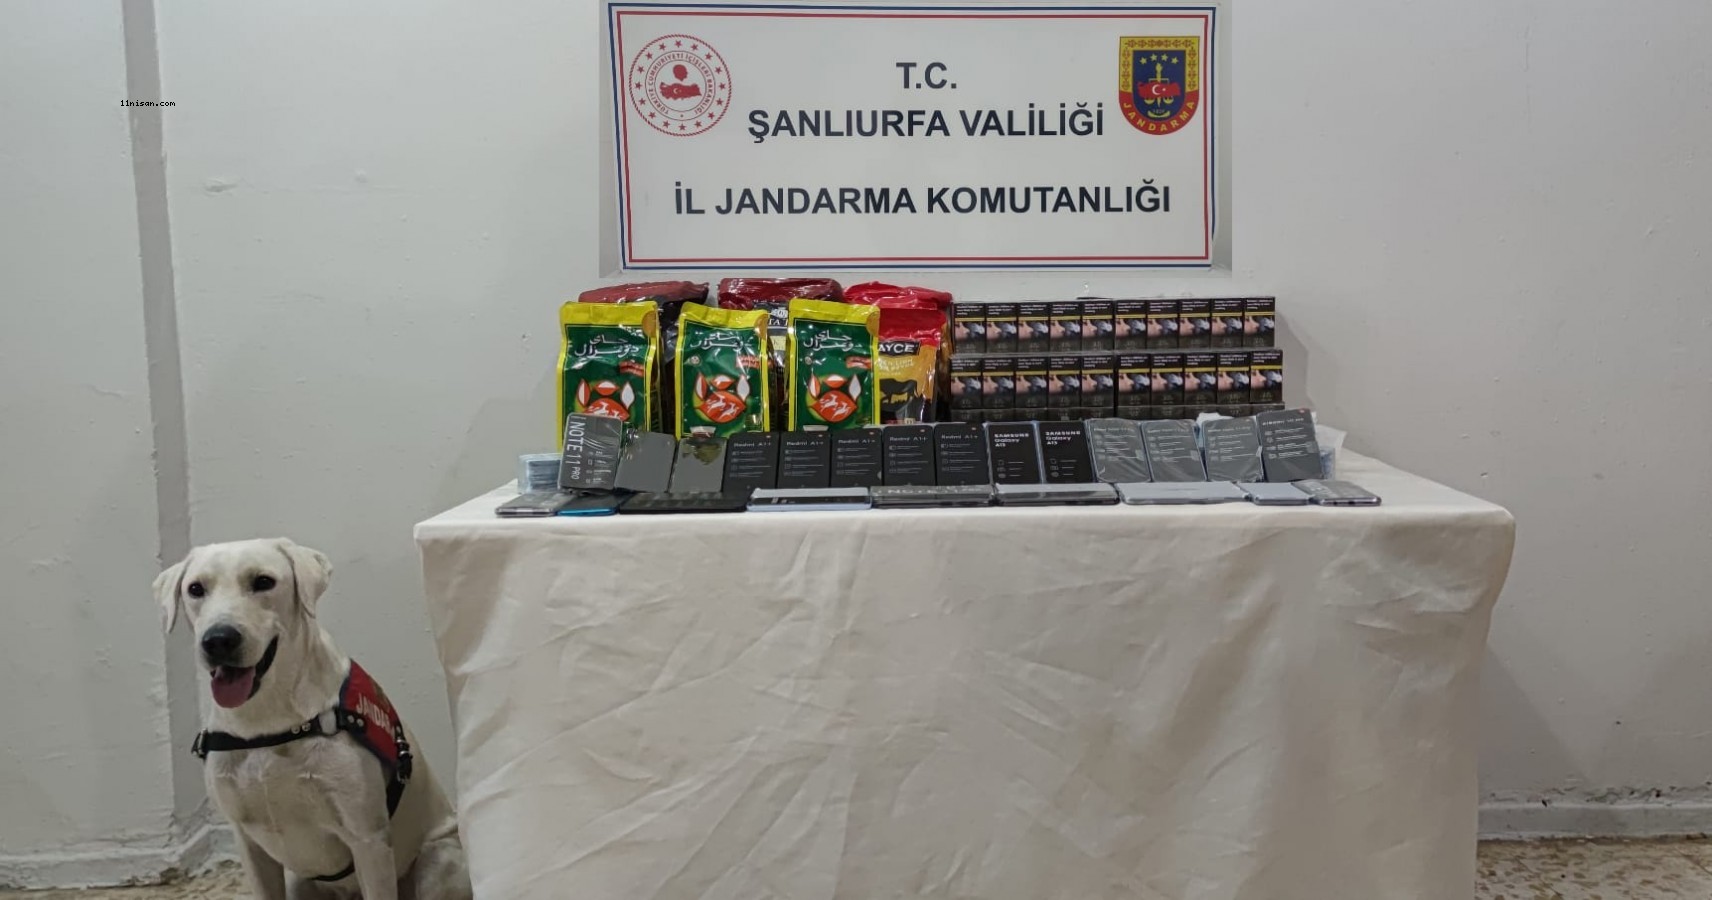 Viranşehir'de kaçak cep telefonu, sigara ve çay ele geçirildi